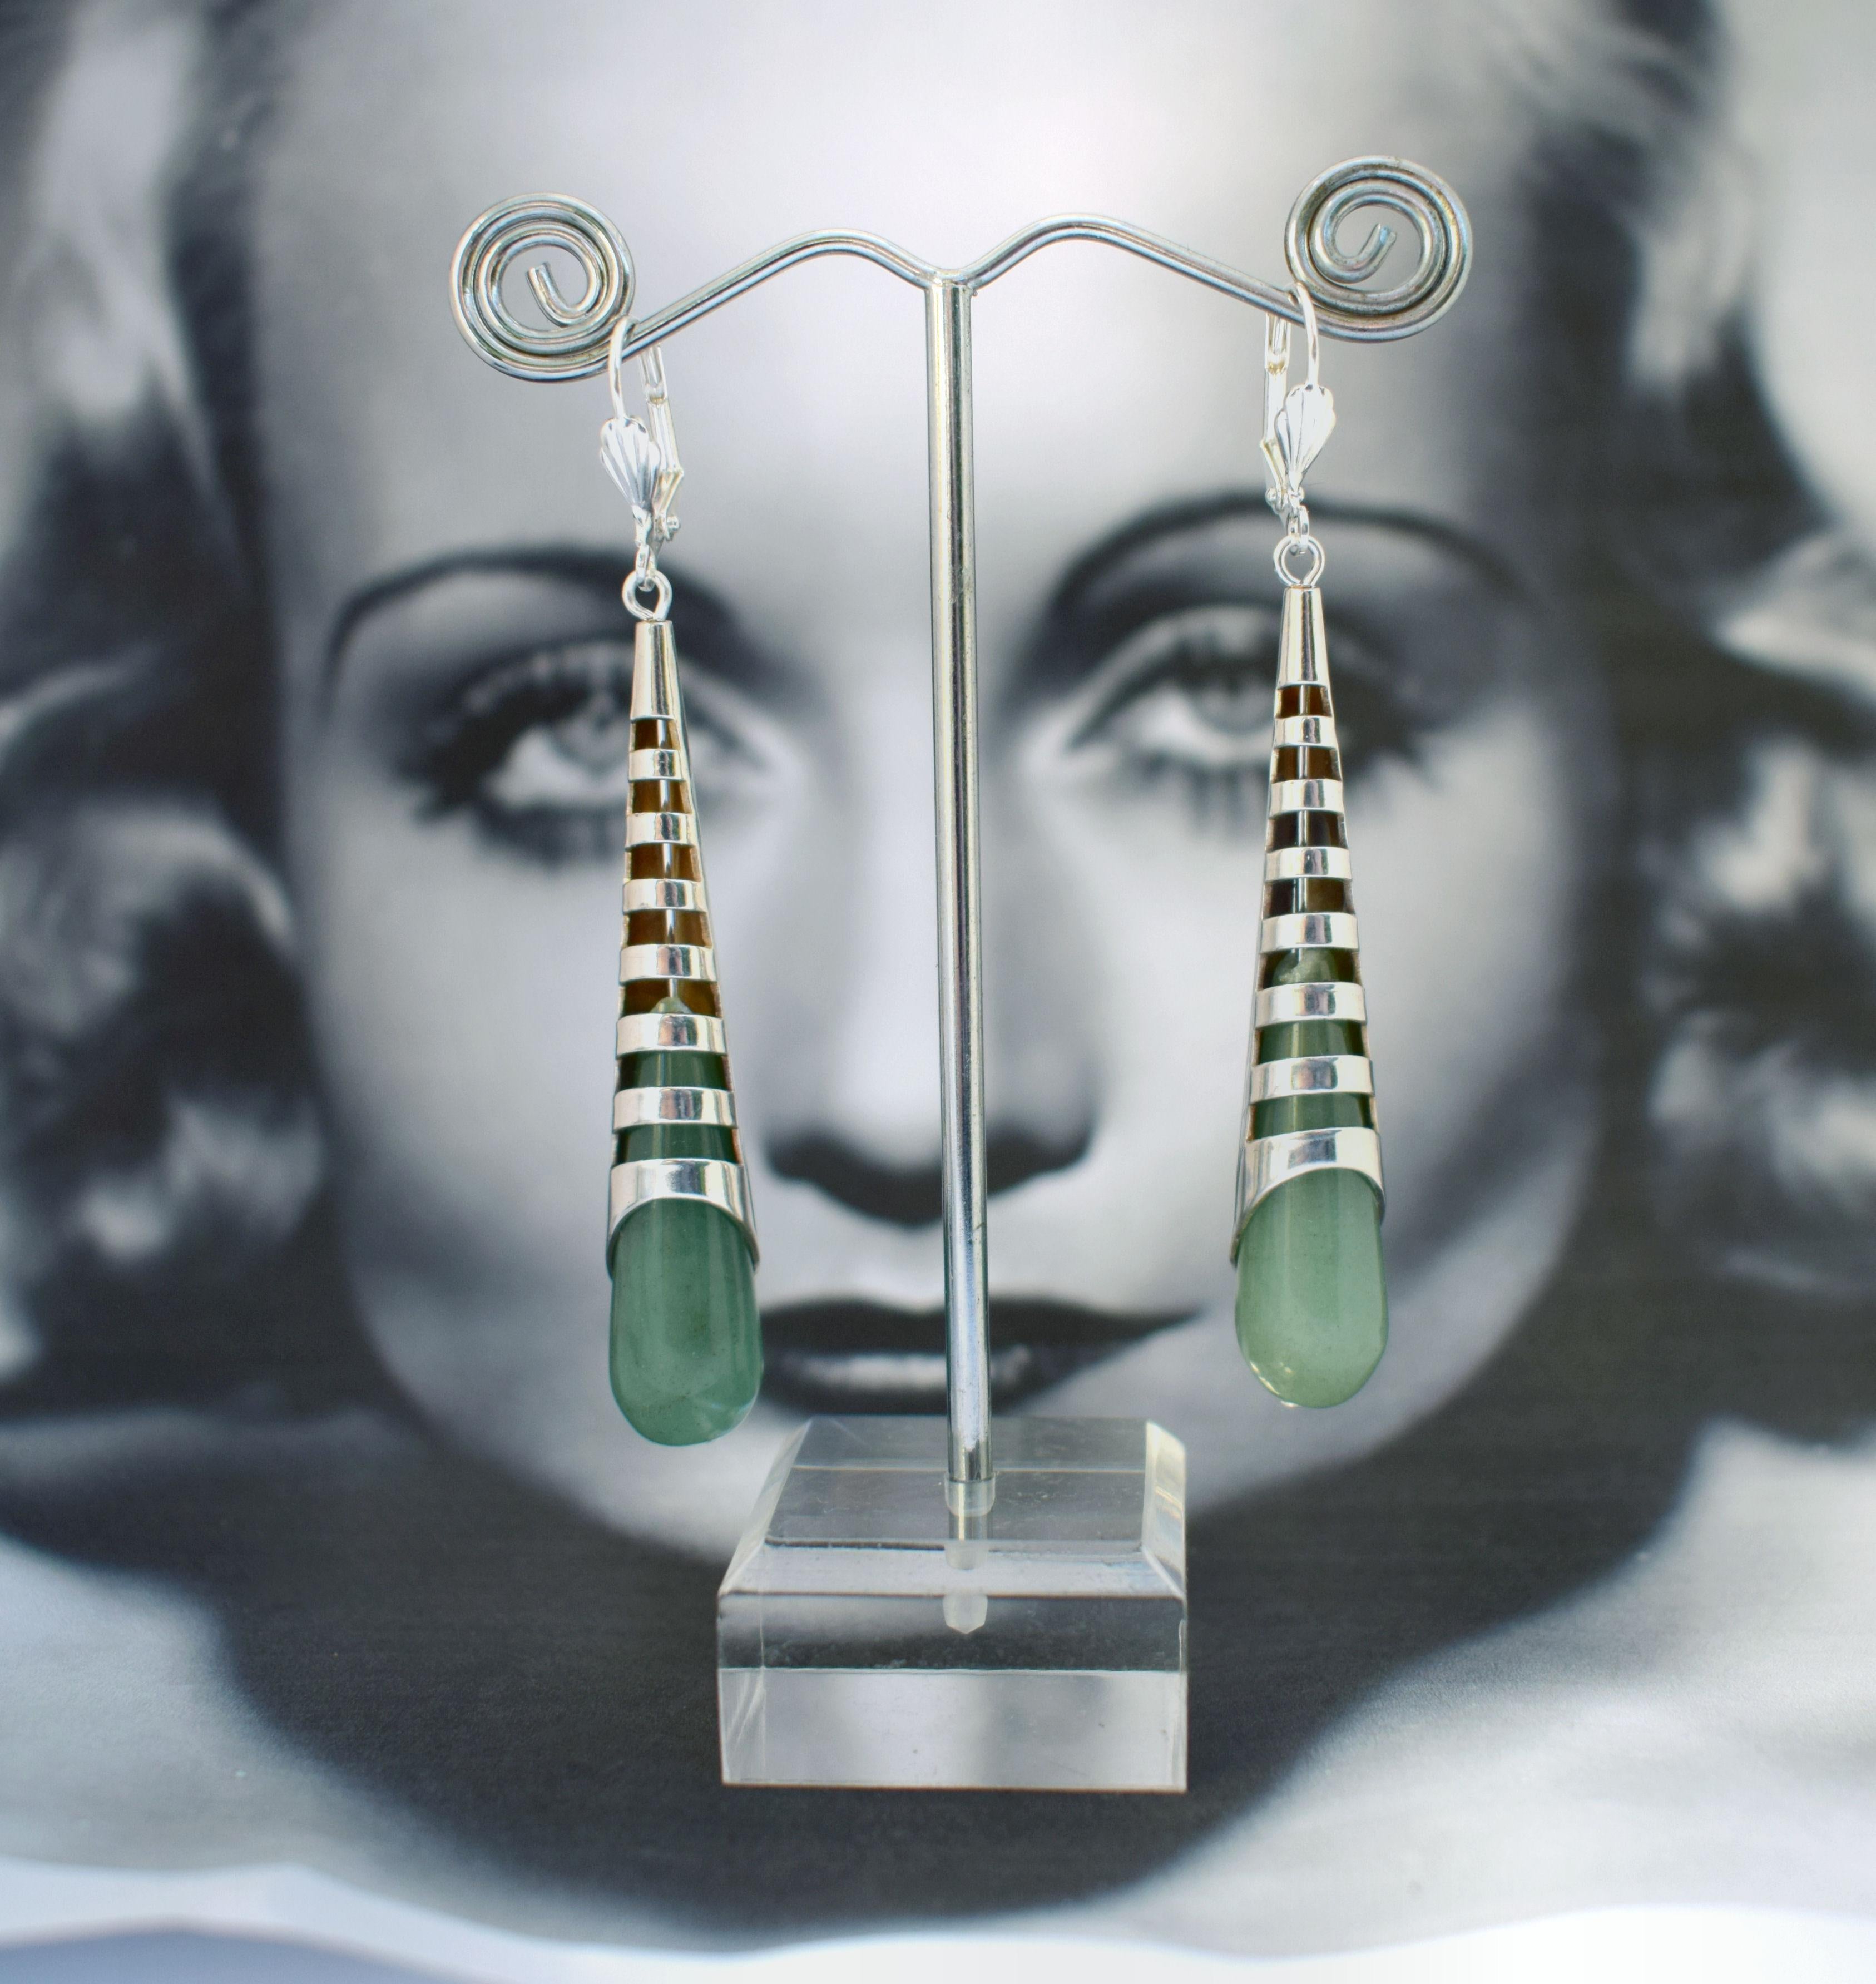 Wunderschönes Paar minimalistische Ohrringe im Art-Déco-Stil. Dies ist ein sehr anspruchsvolles Schmuckstück - wunderschön gemacht, man trägt es zu den besten Anlässen. Diese Ohrringe sind aus versilbertem Messing und grünem Glas gefertigt und